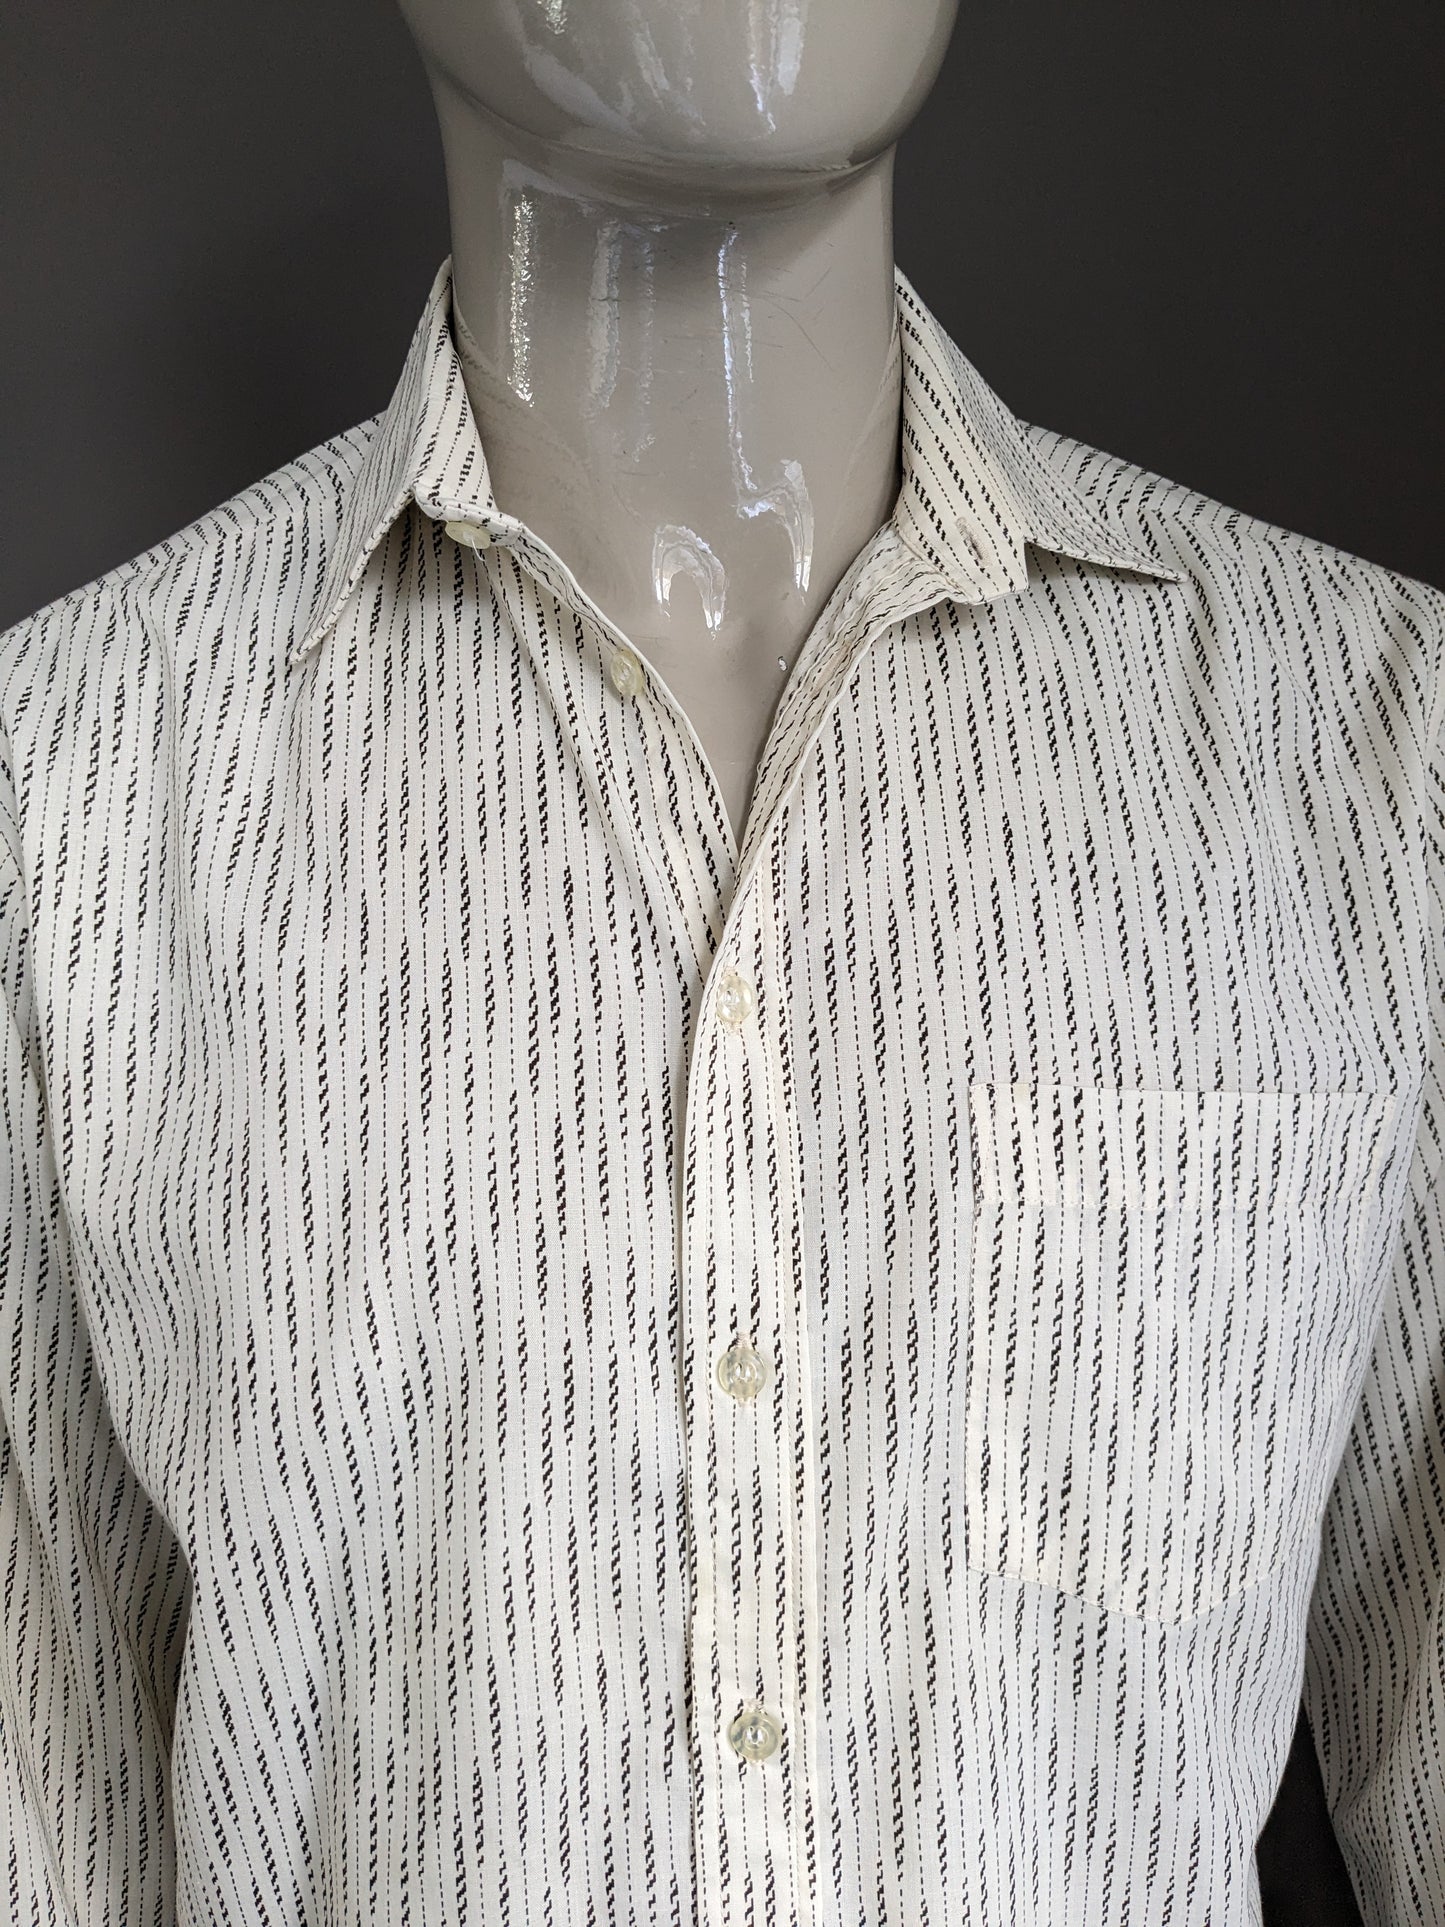 Camisa Vintage Fekon 70. Impresión beige marrón. Tamaño xl.